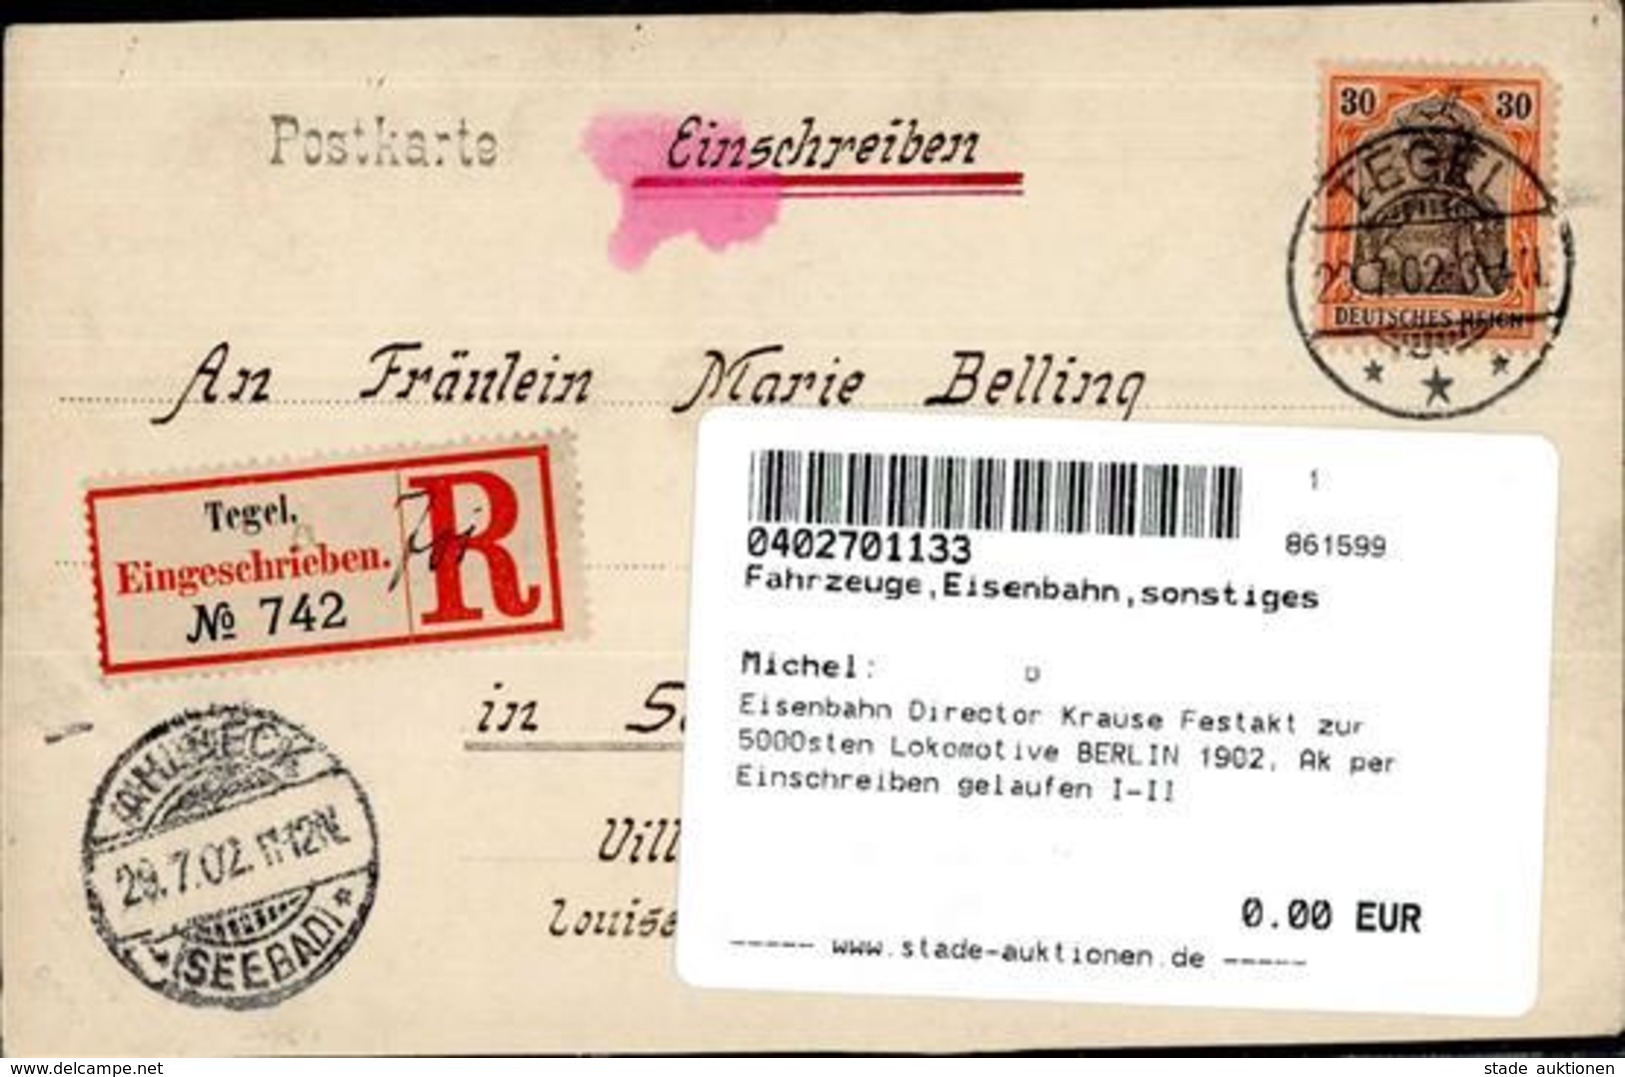 Eisenbahn Director Krause Festakt Zur 5000sten Lokomotive BERLIN 1902, Ak Per Einschreiben Gelaufen I-II Chemin De Fer - Trains